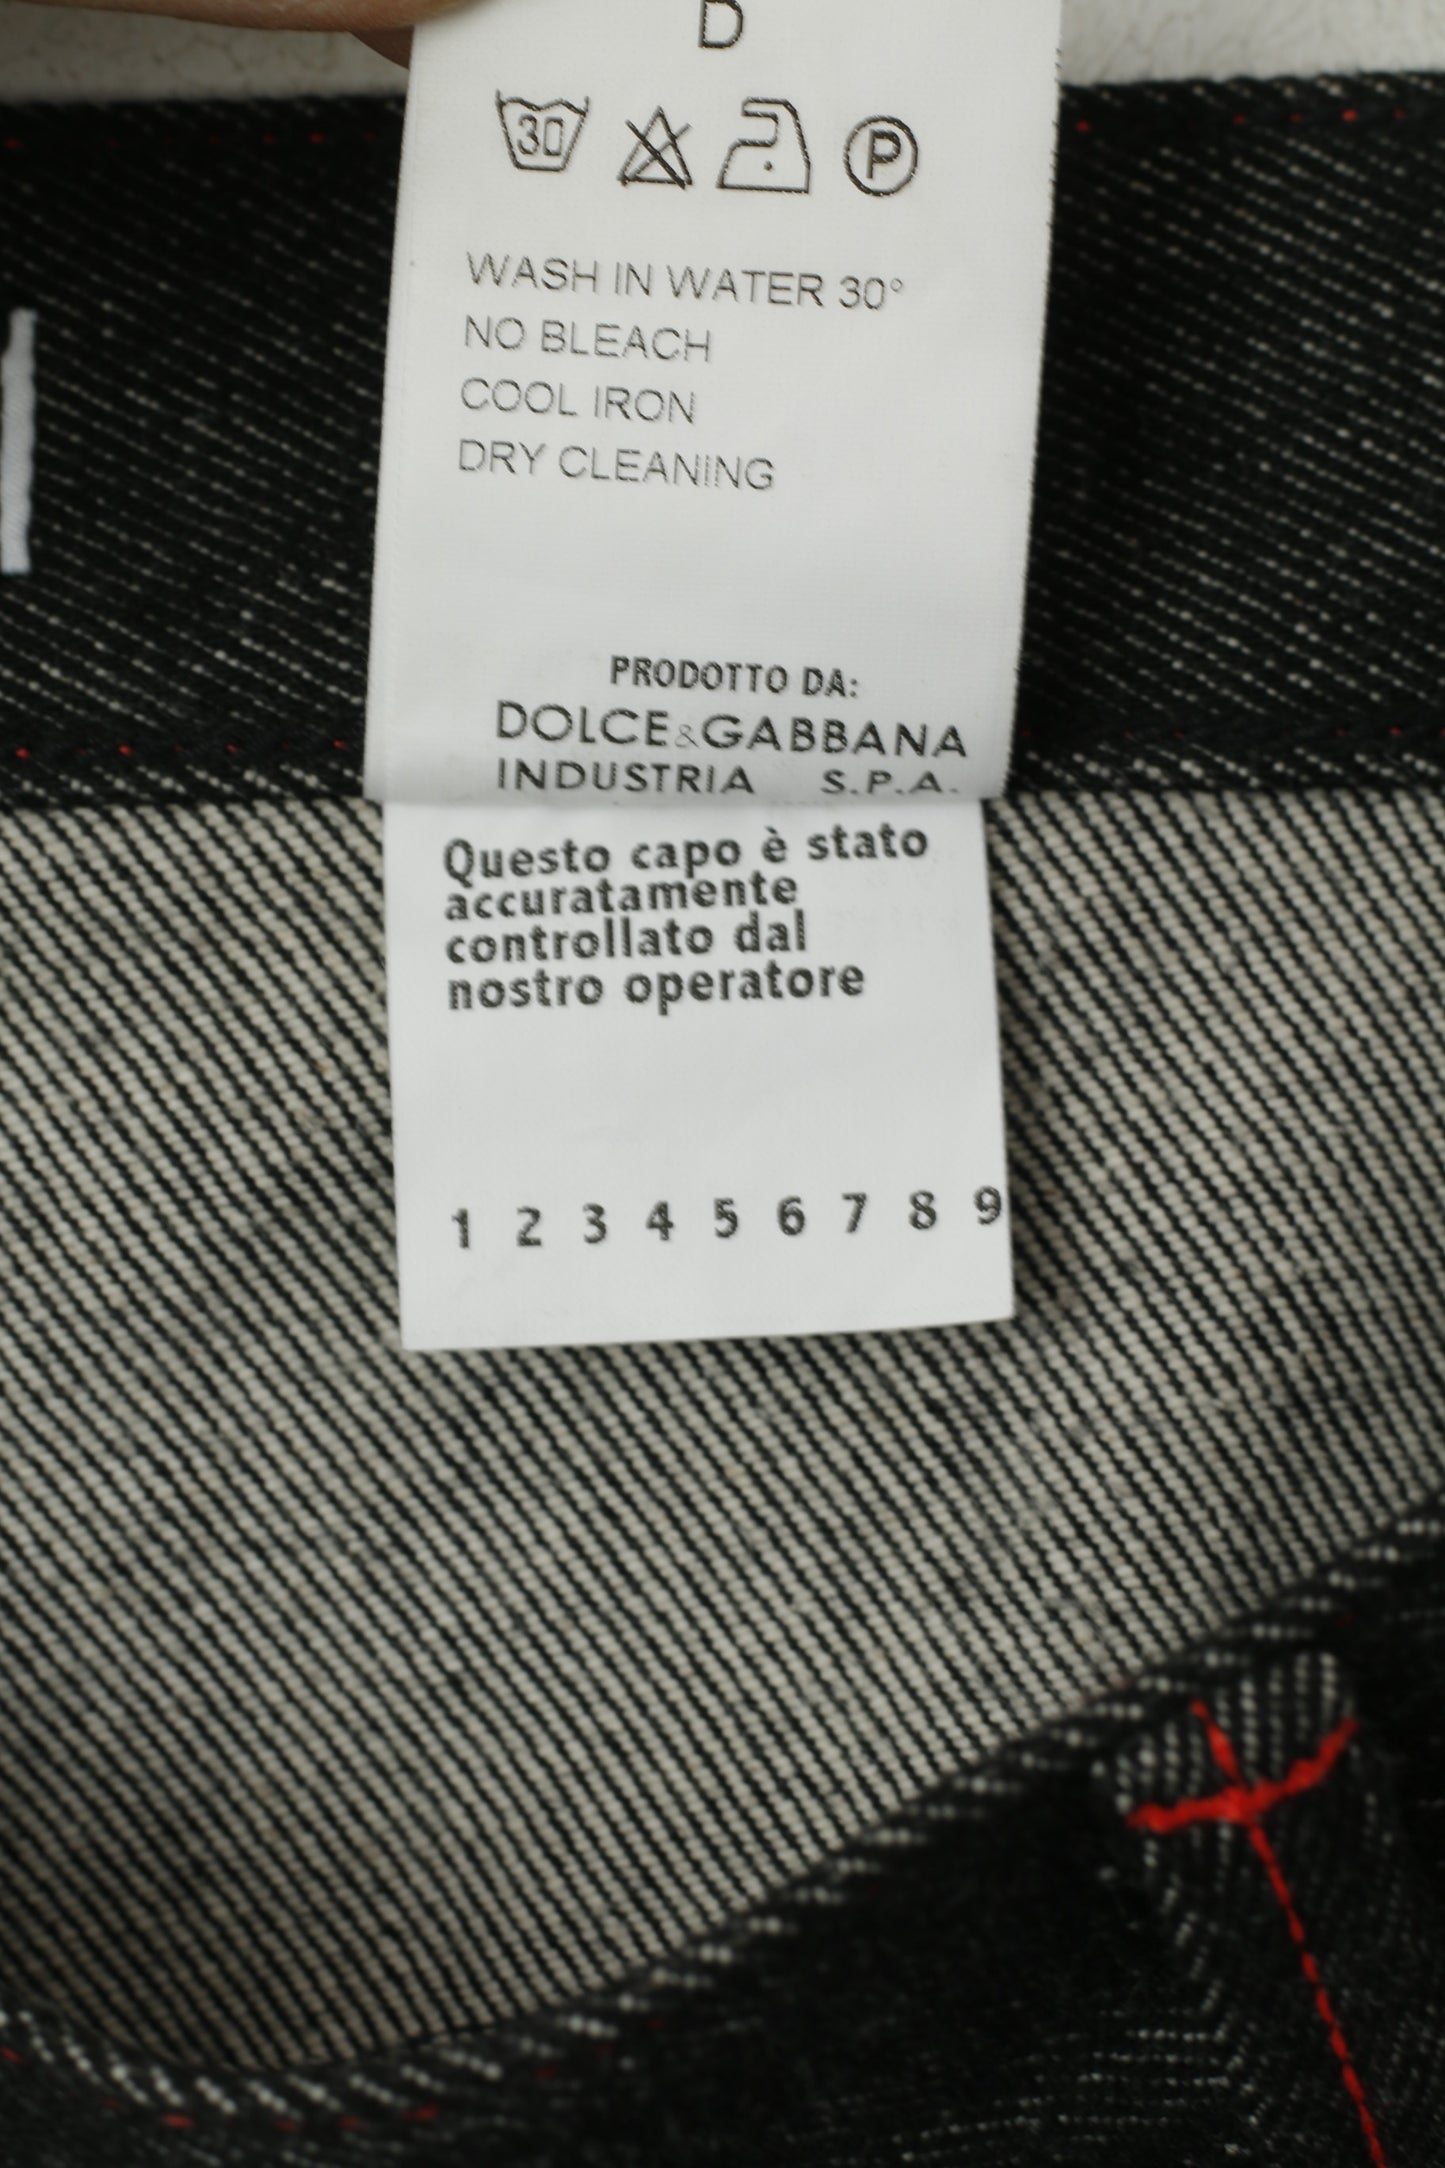 Dolce & Gabbana Women 42 Capri Trousers Black Jeans Cotton Stretch D&G Cropped Pants